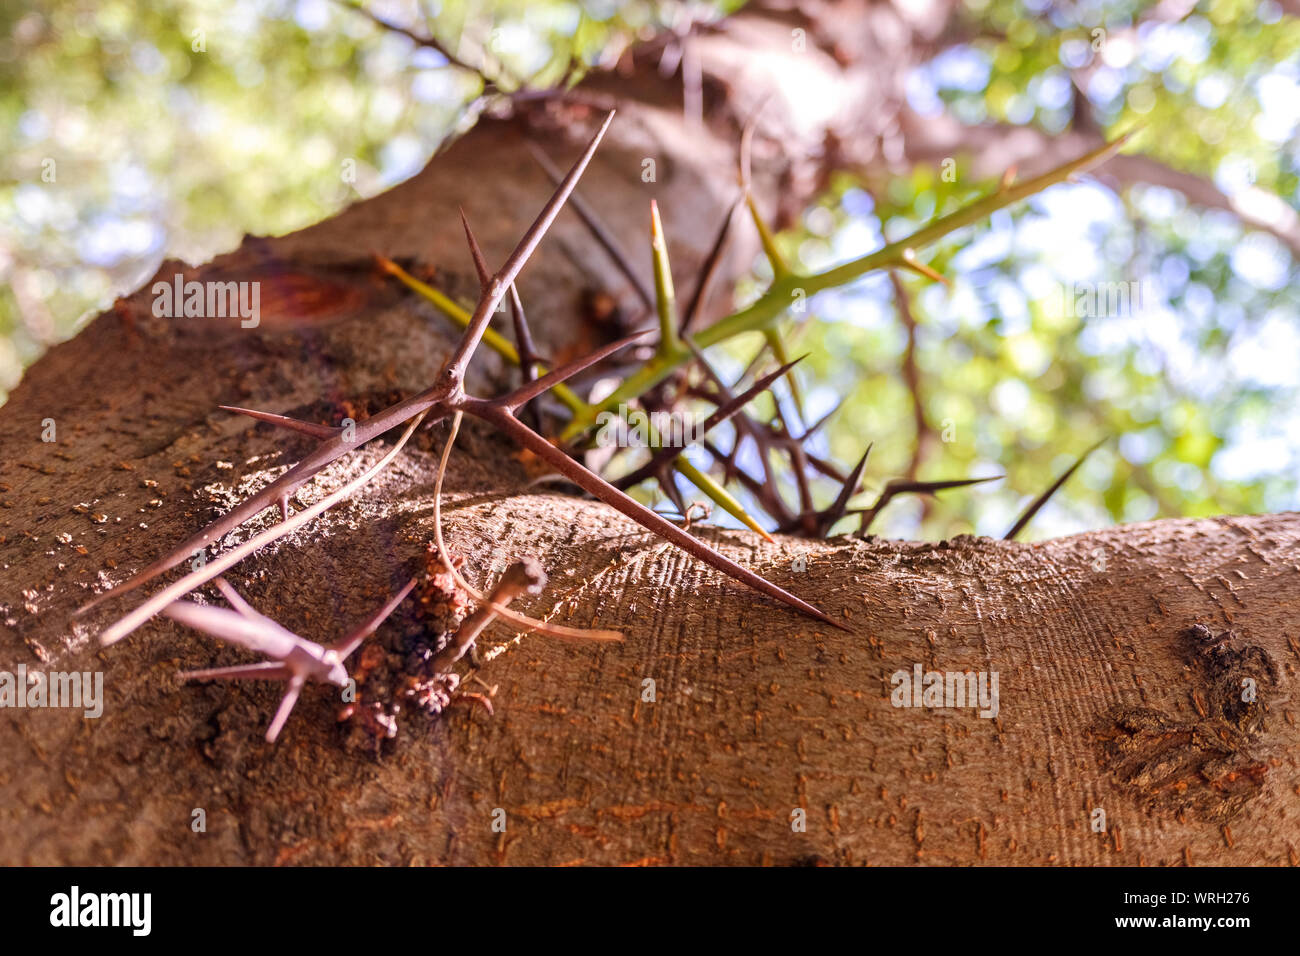 Tronco de árbol con espinas para proteger contra los efectos nocivos de los animales. Foto de stock